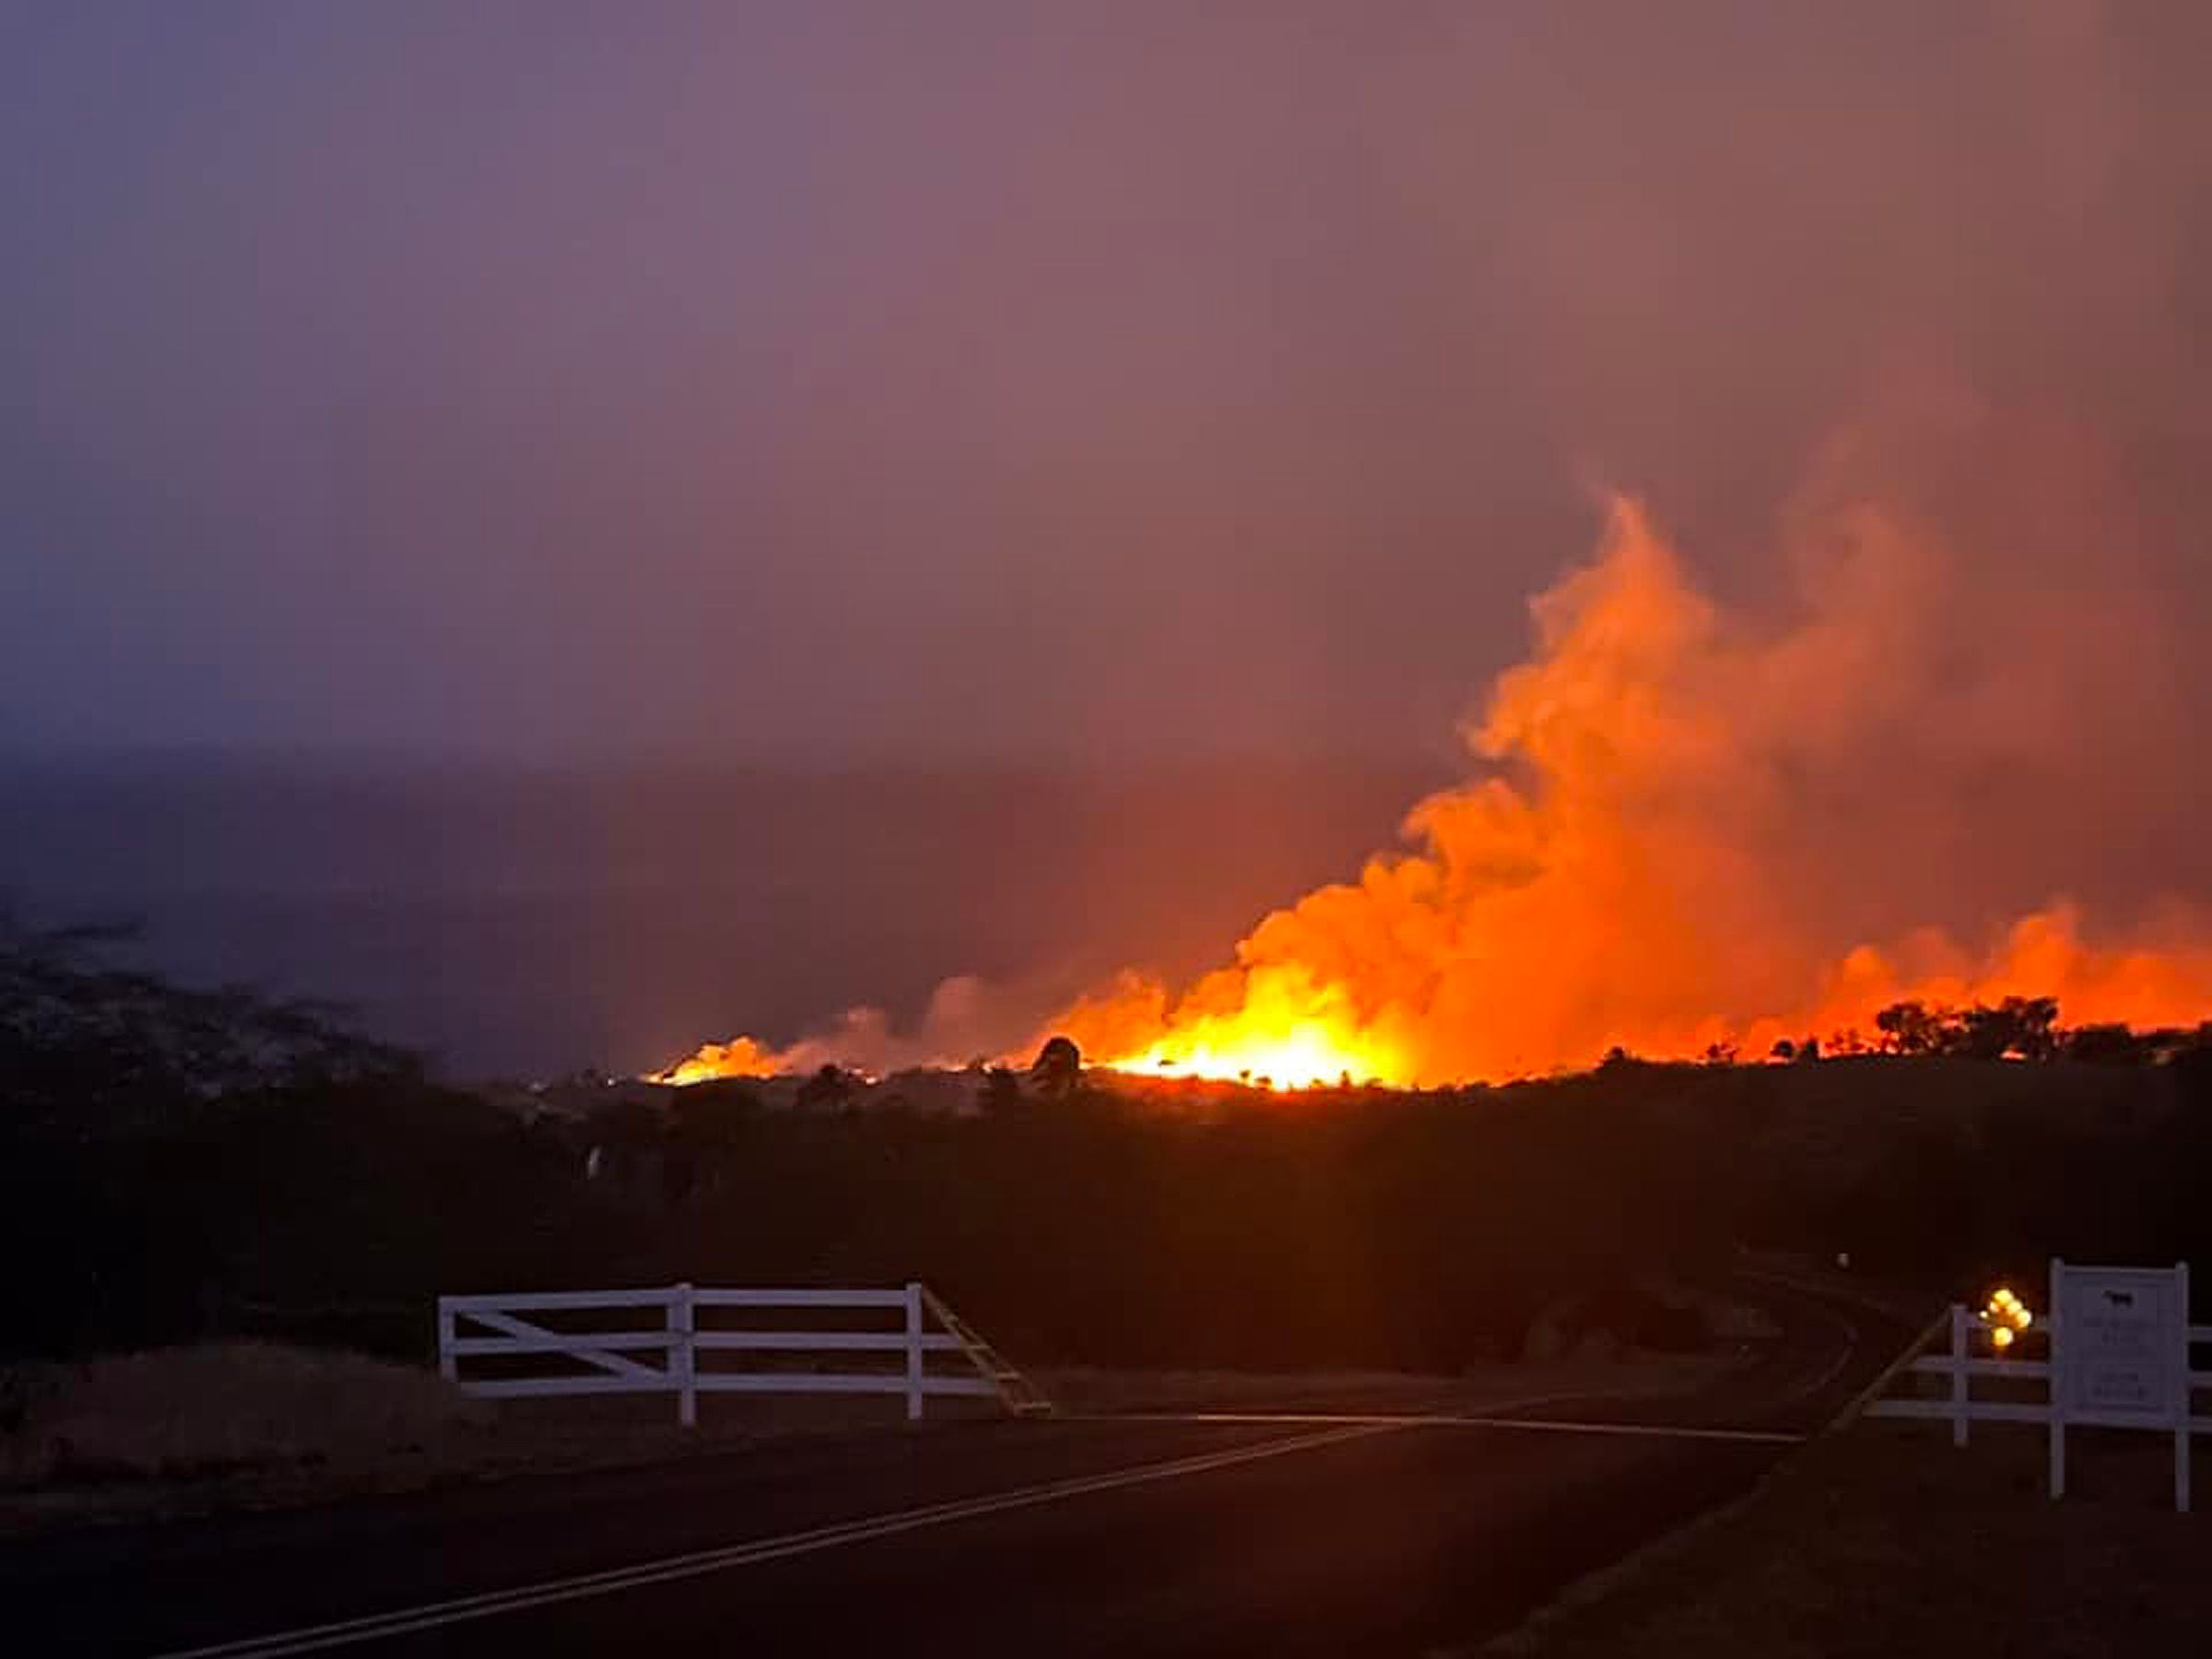 Kohala Ranch, en Hawaii, otras de las regiones que padecen los incendios en medio de la sequía y los fuertes vientos que agitan las llamas y las propagan (Senator Tim Richards / Zuma Press / ContactoPhoto)